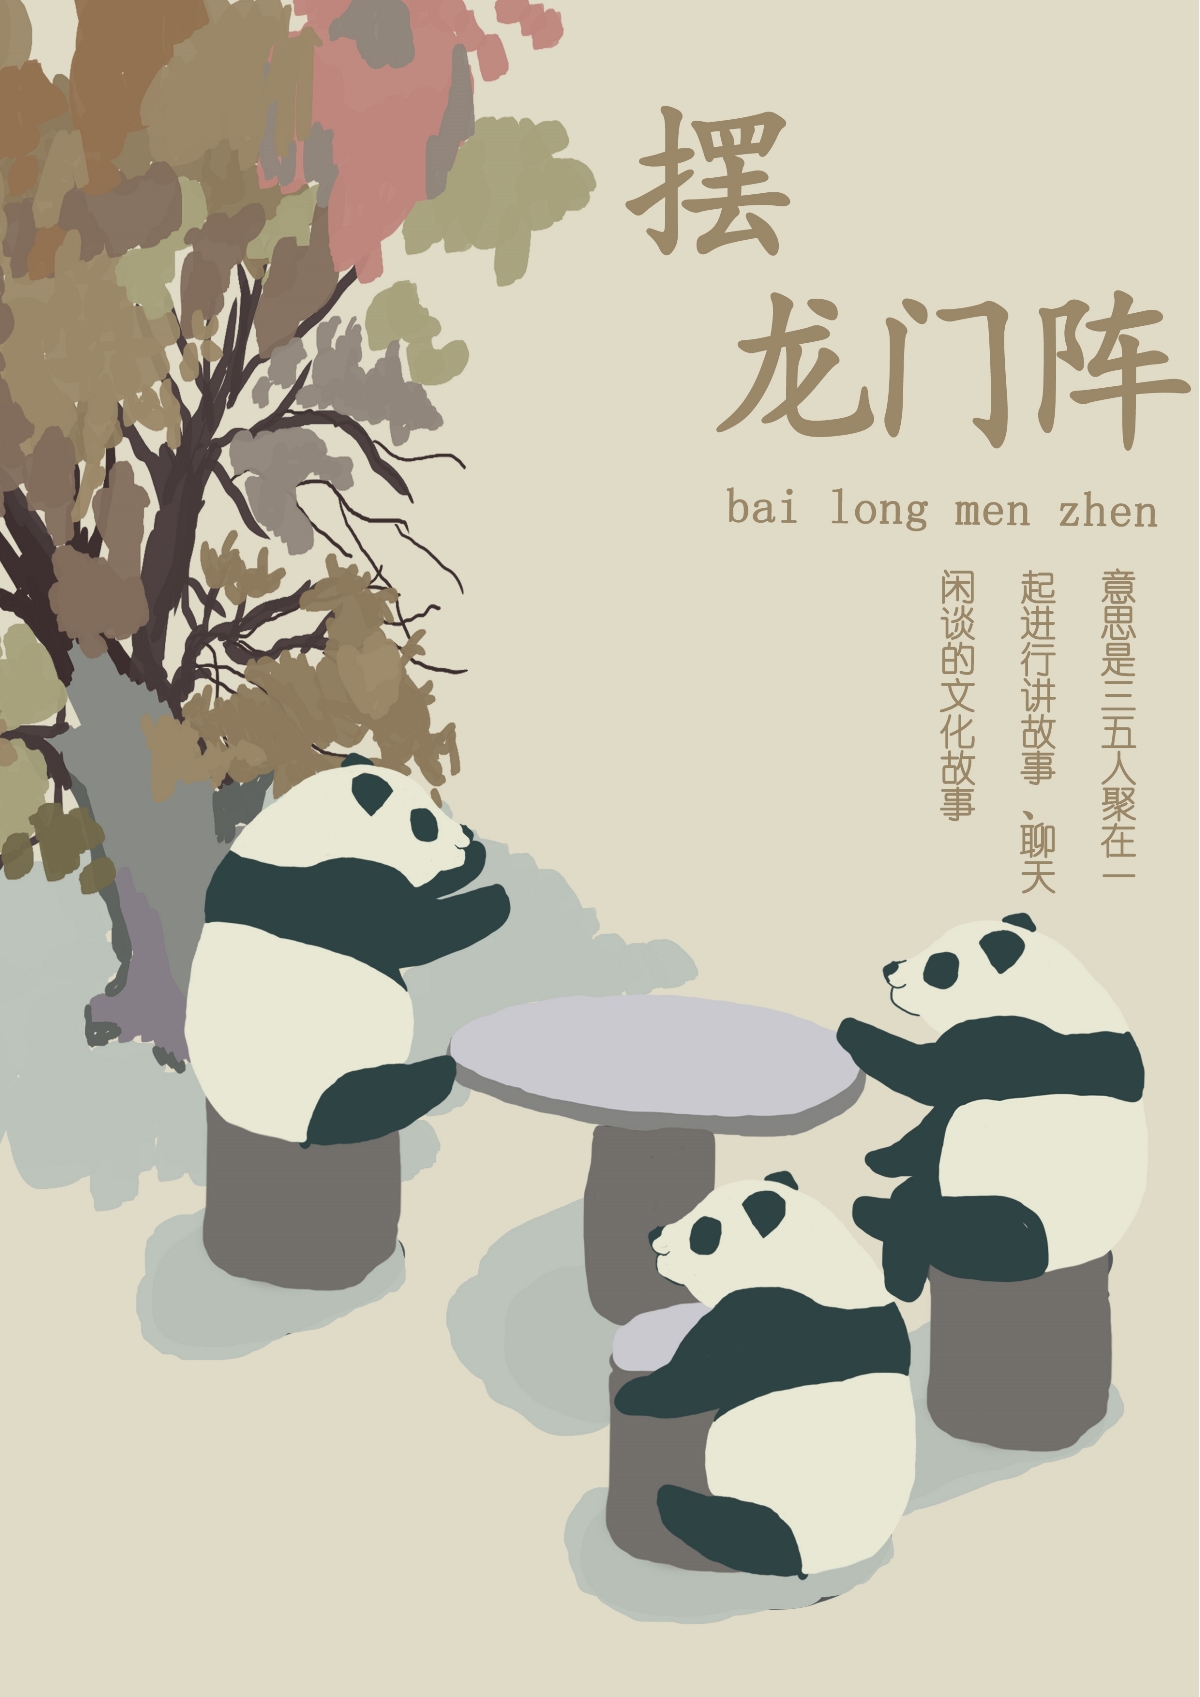 熊猫的川话生活